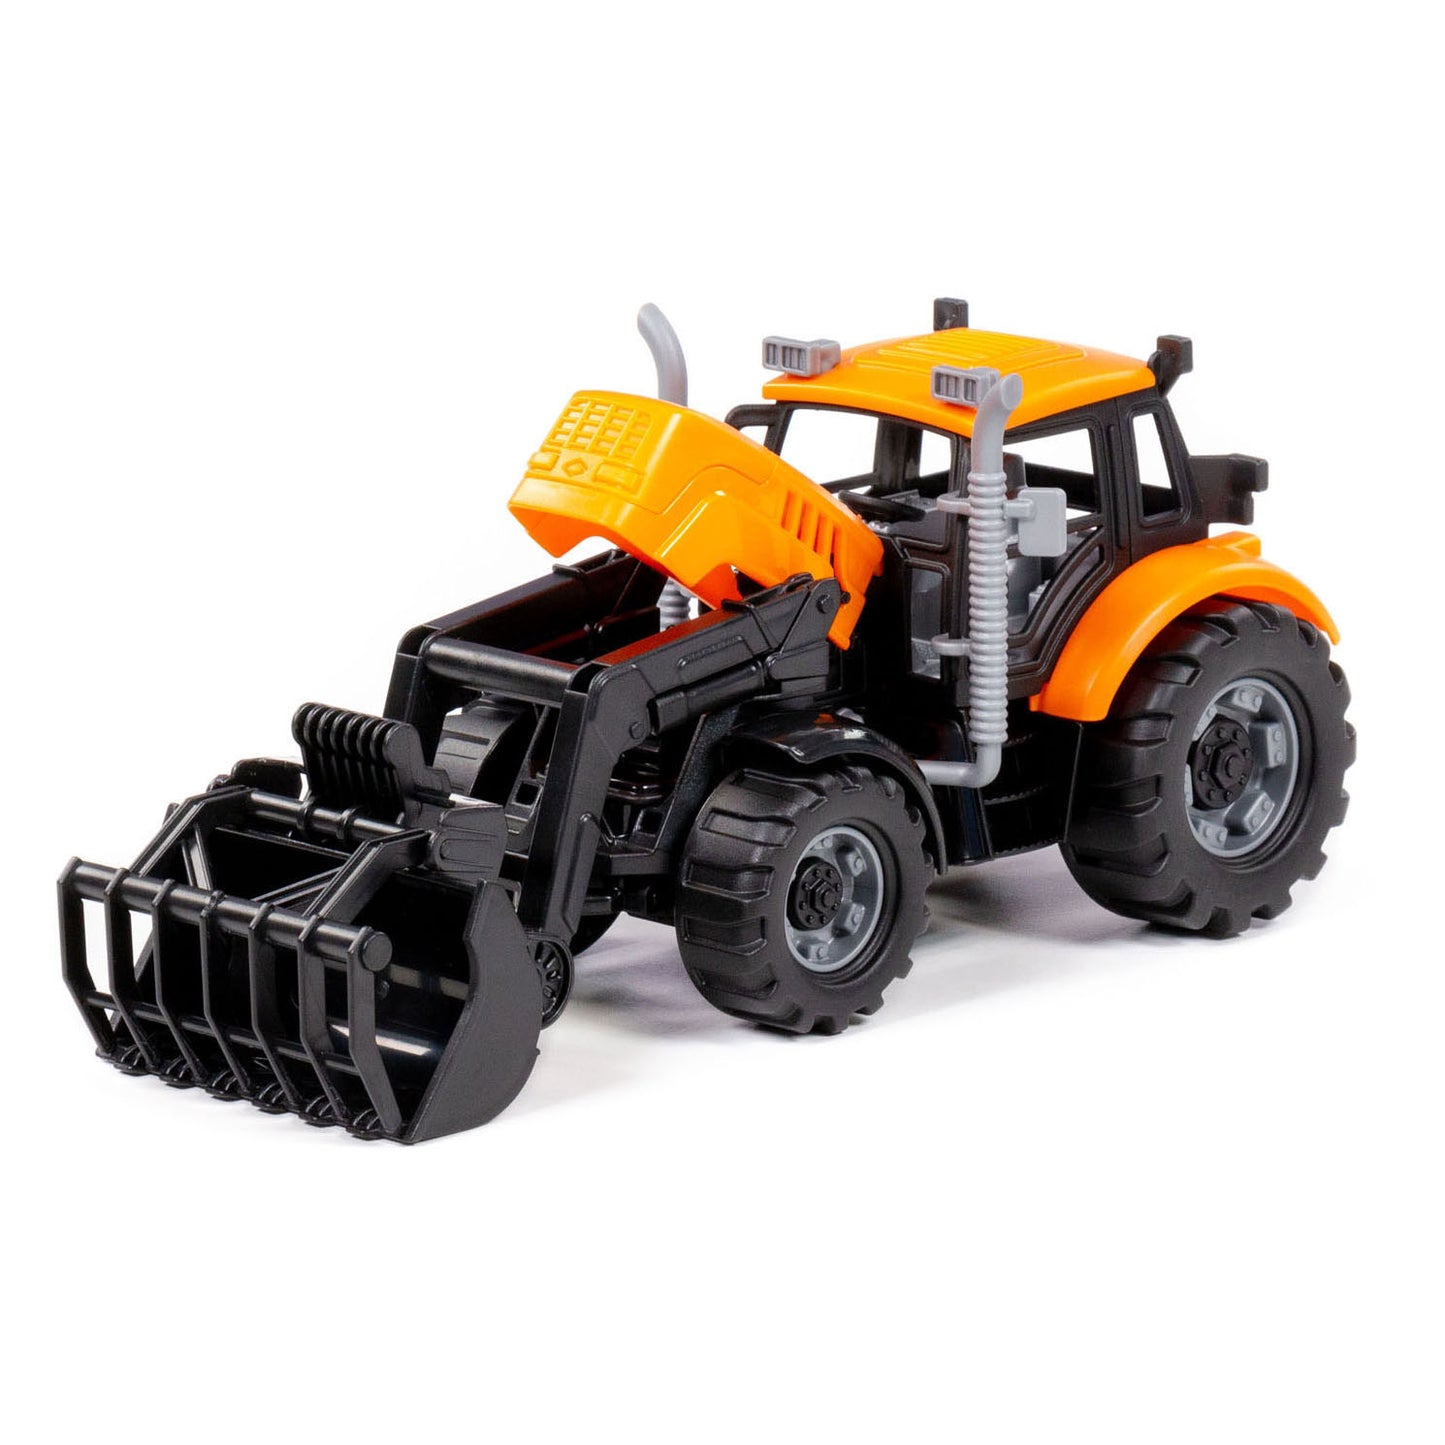 Cavallino Toys Cavallino Tractor con caricabatterie giallo, scala 1:32